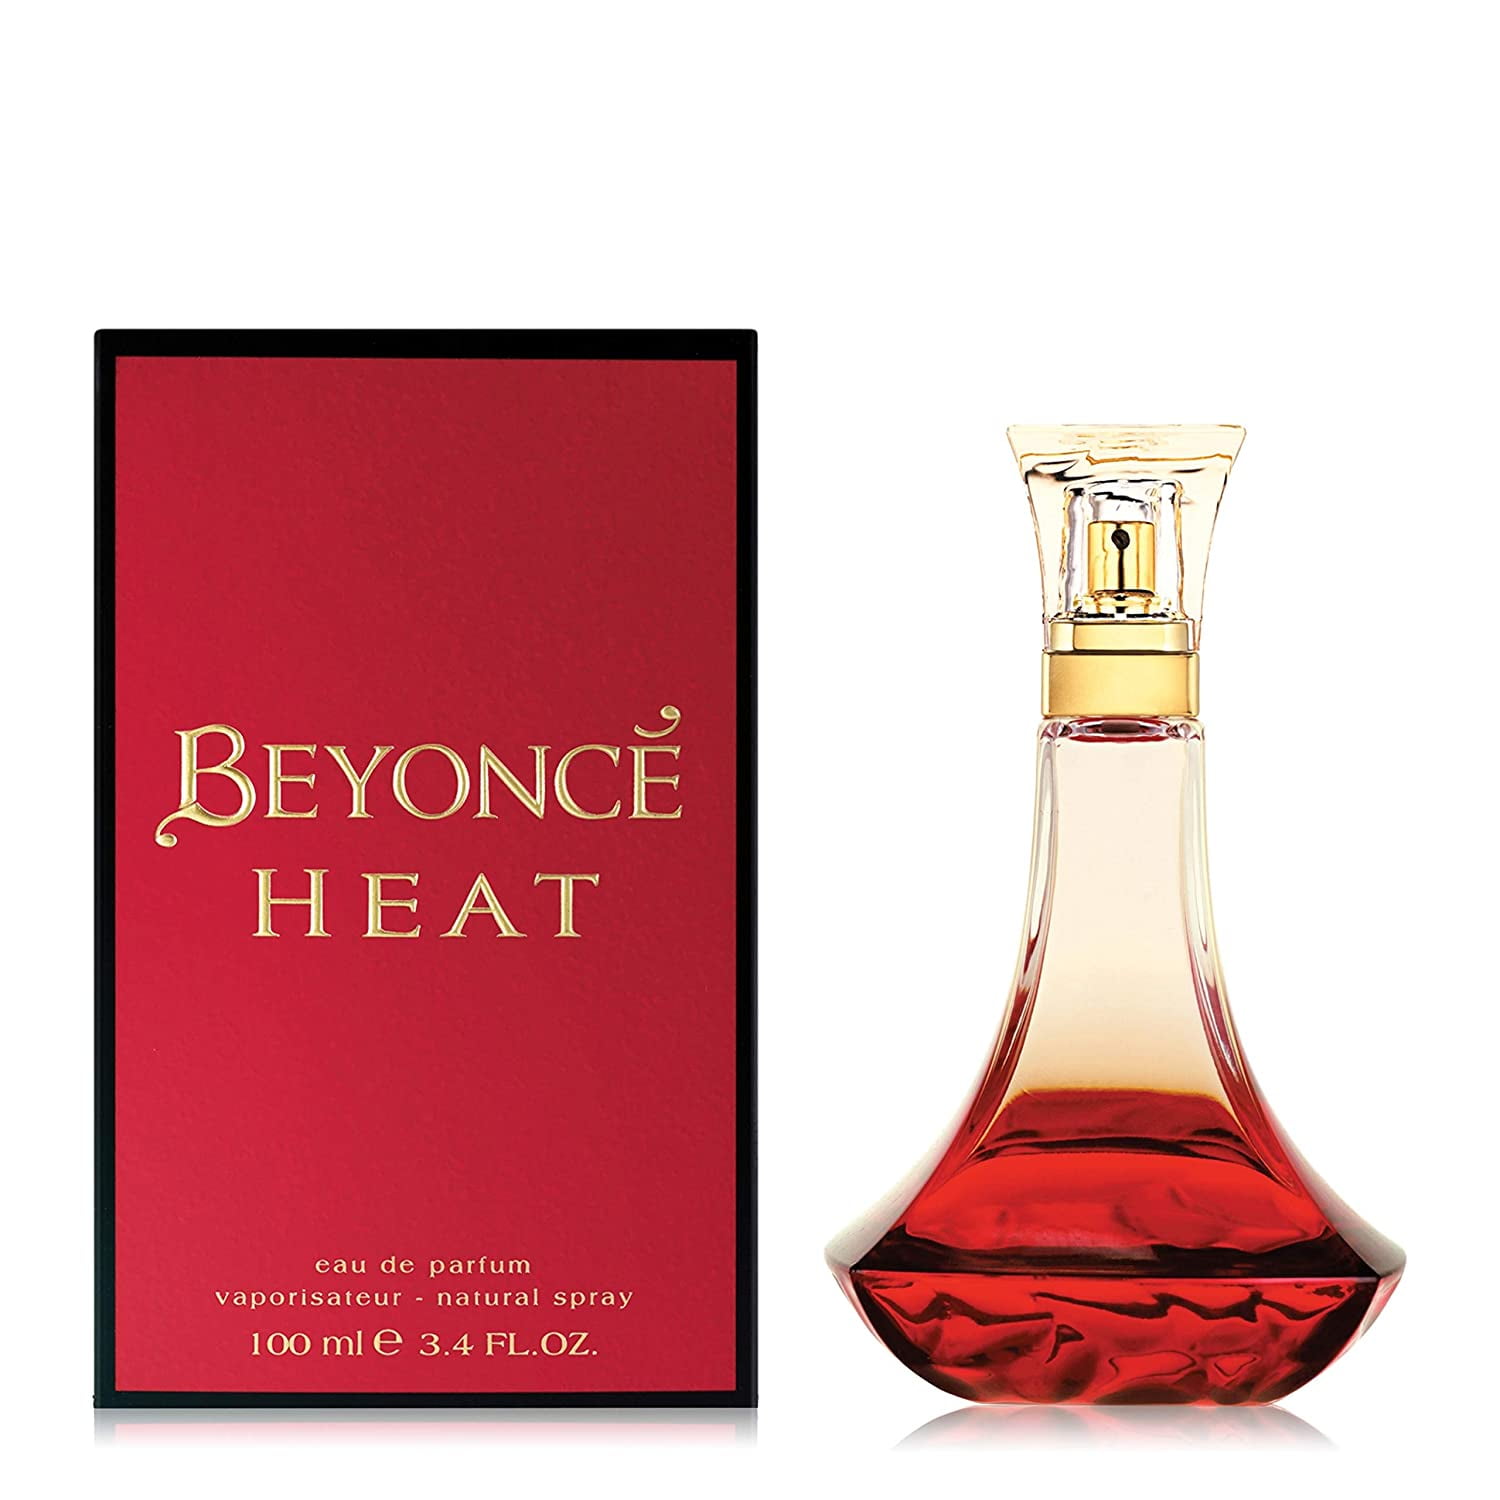 Beyonce Heat 100ml Edp - Walmart.com